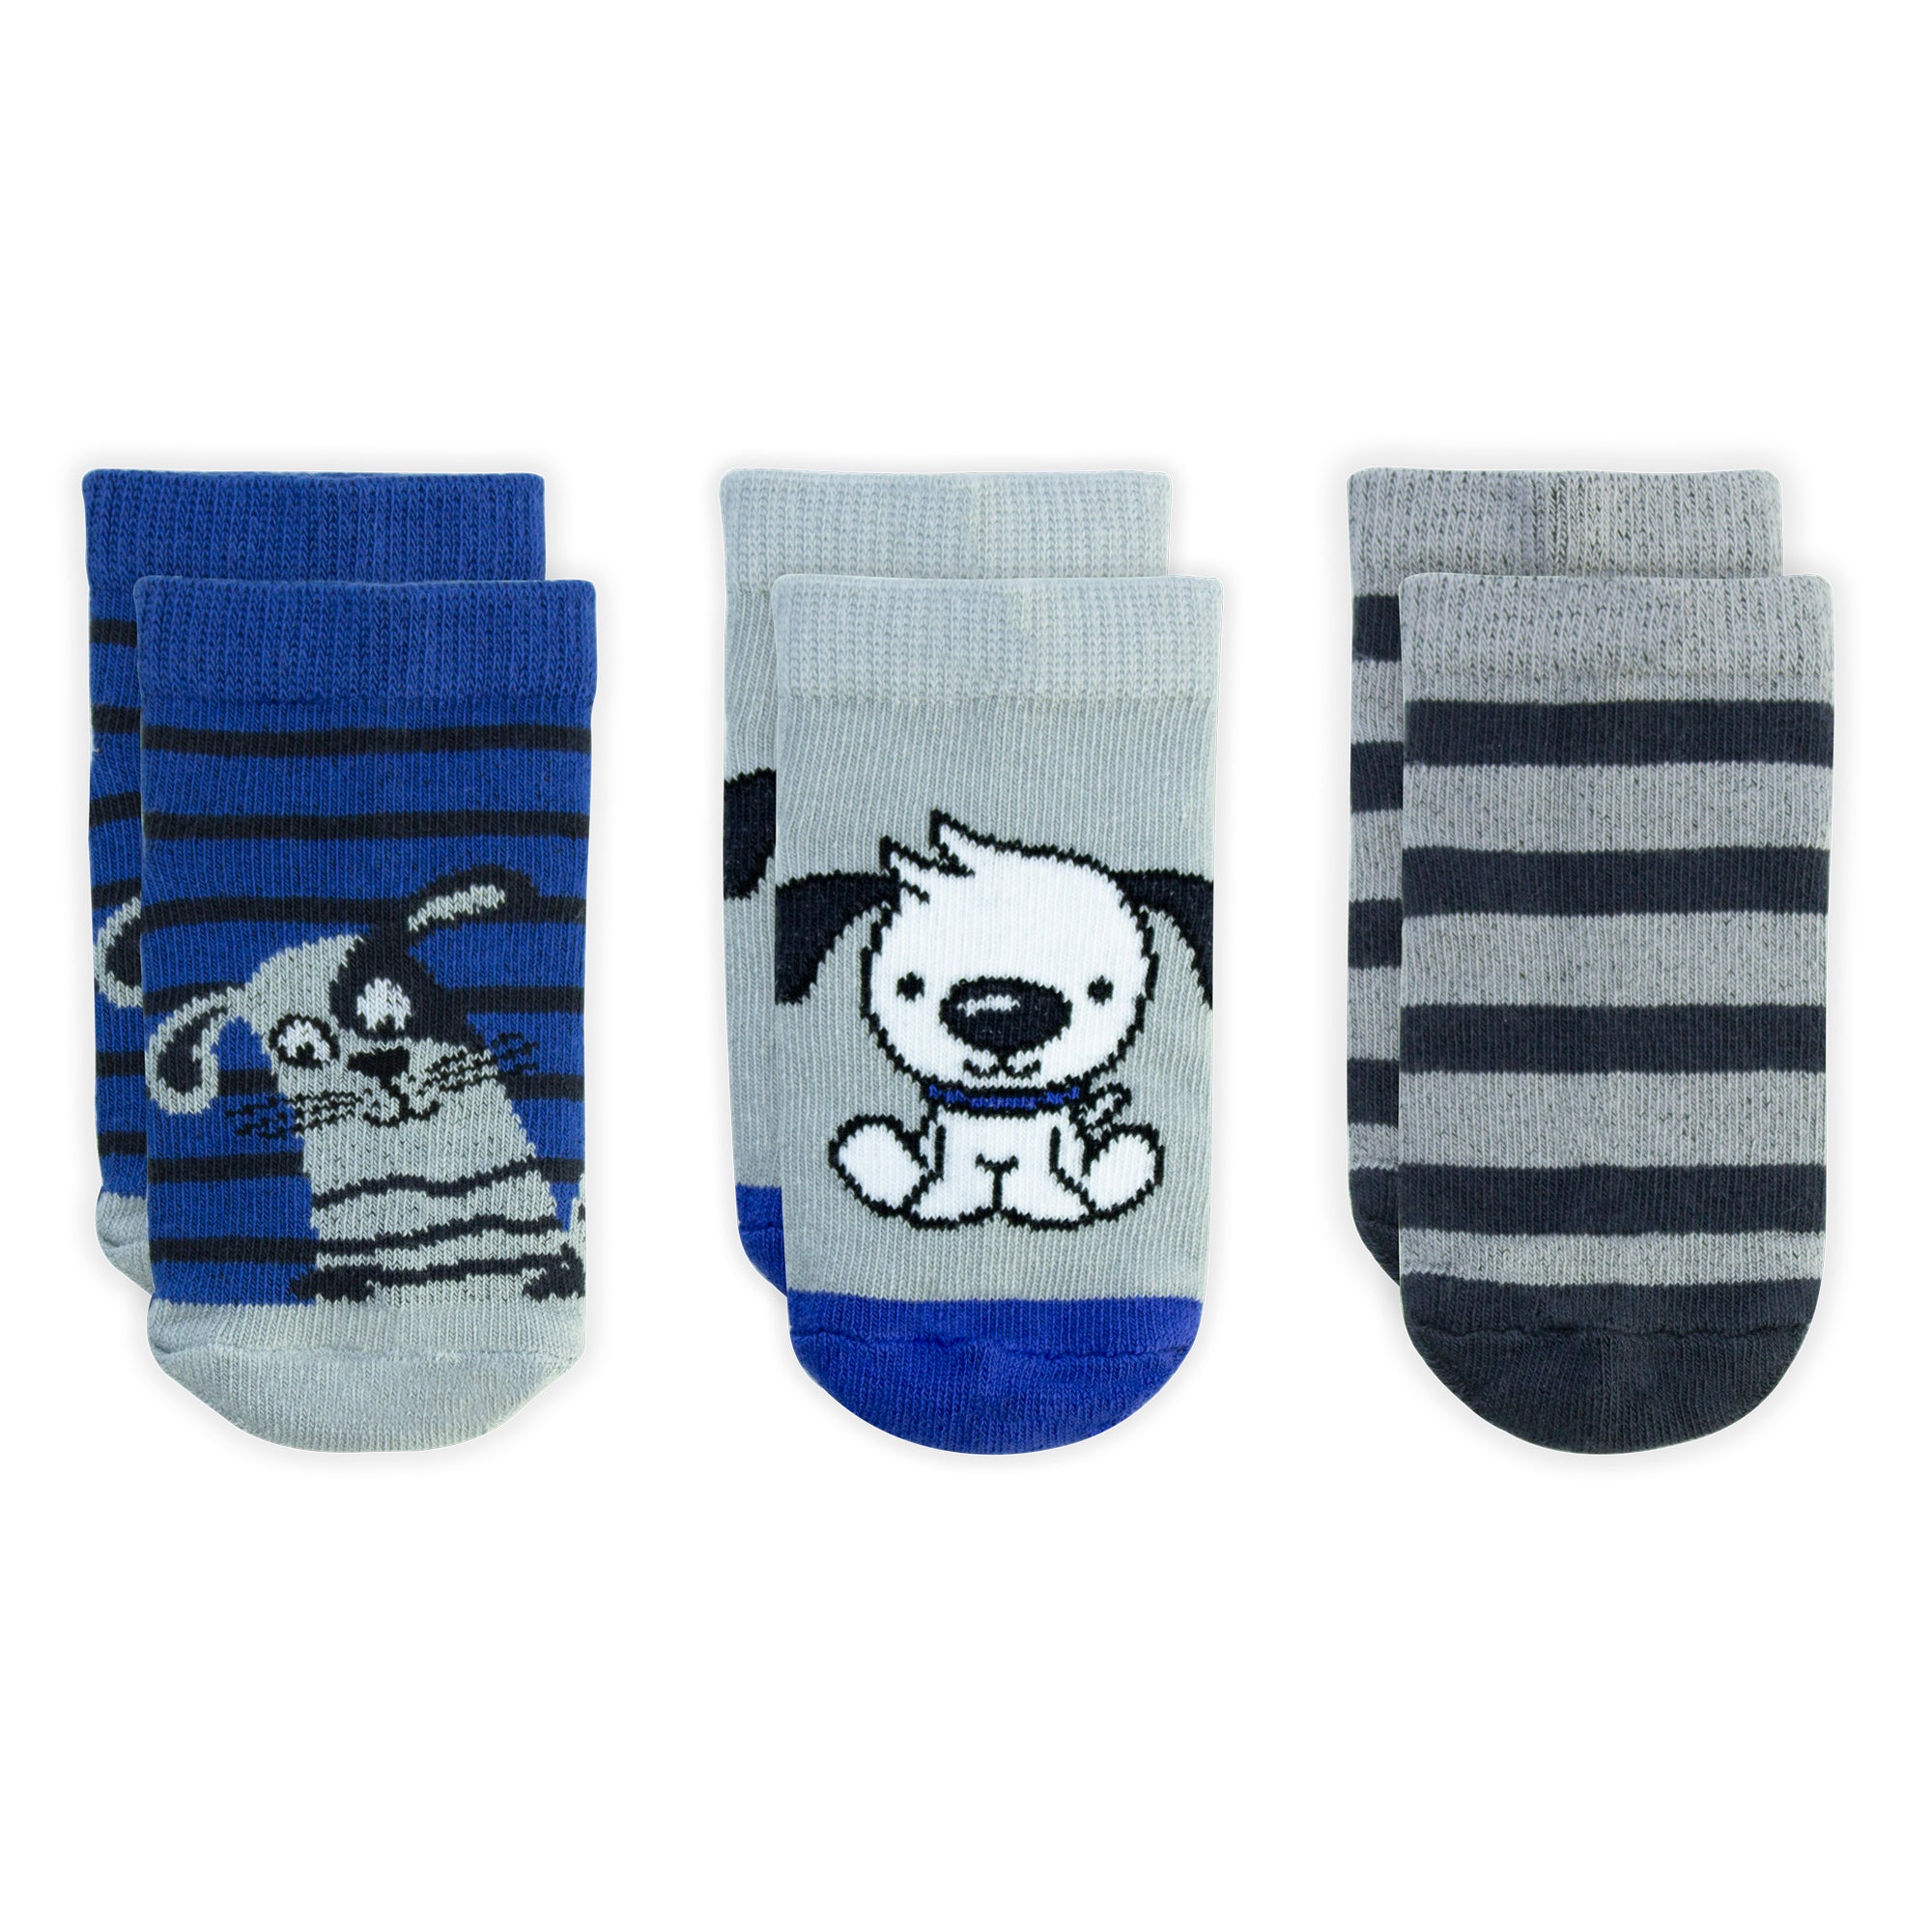 Pack 3 calcetines niña líneas y animales - TRICOT